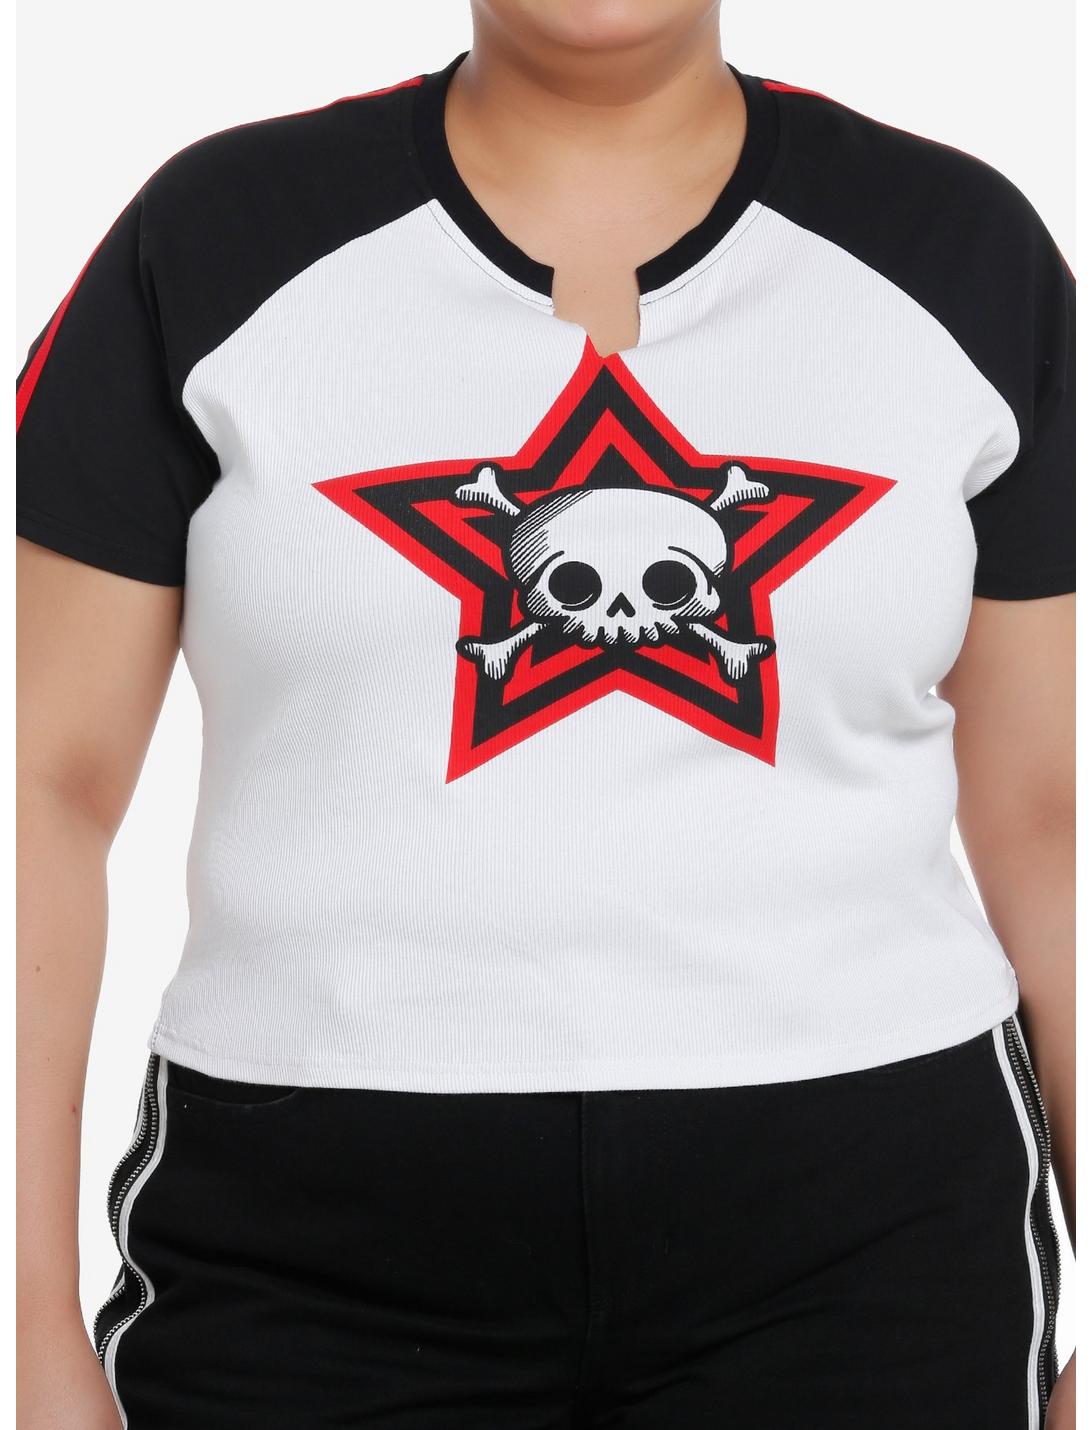 Social Collision Skull Stripe Girls Raglan Crop T-Shirt Plus Size, BLACK, hi-res